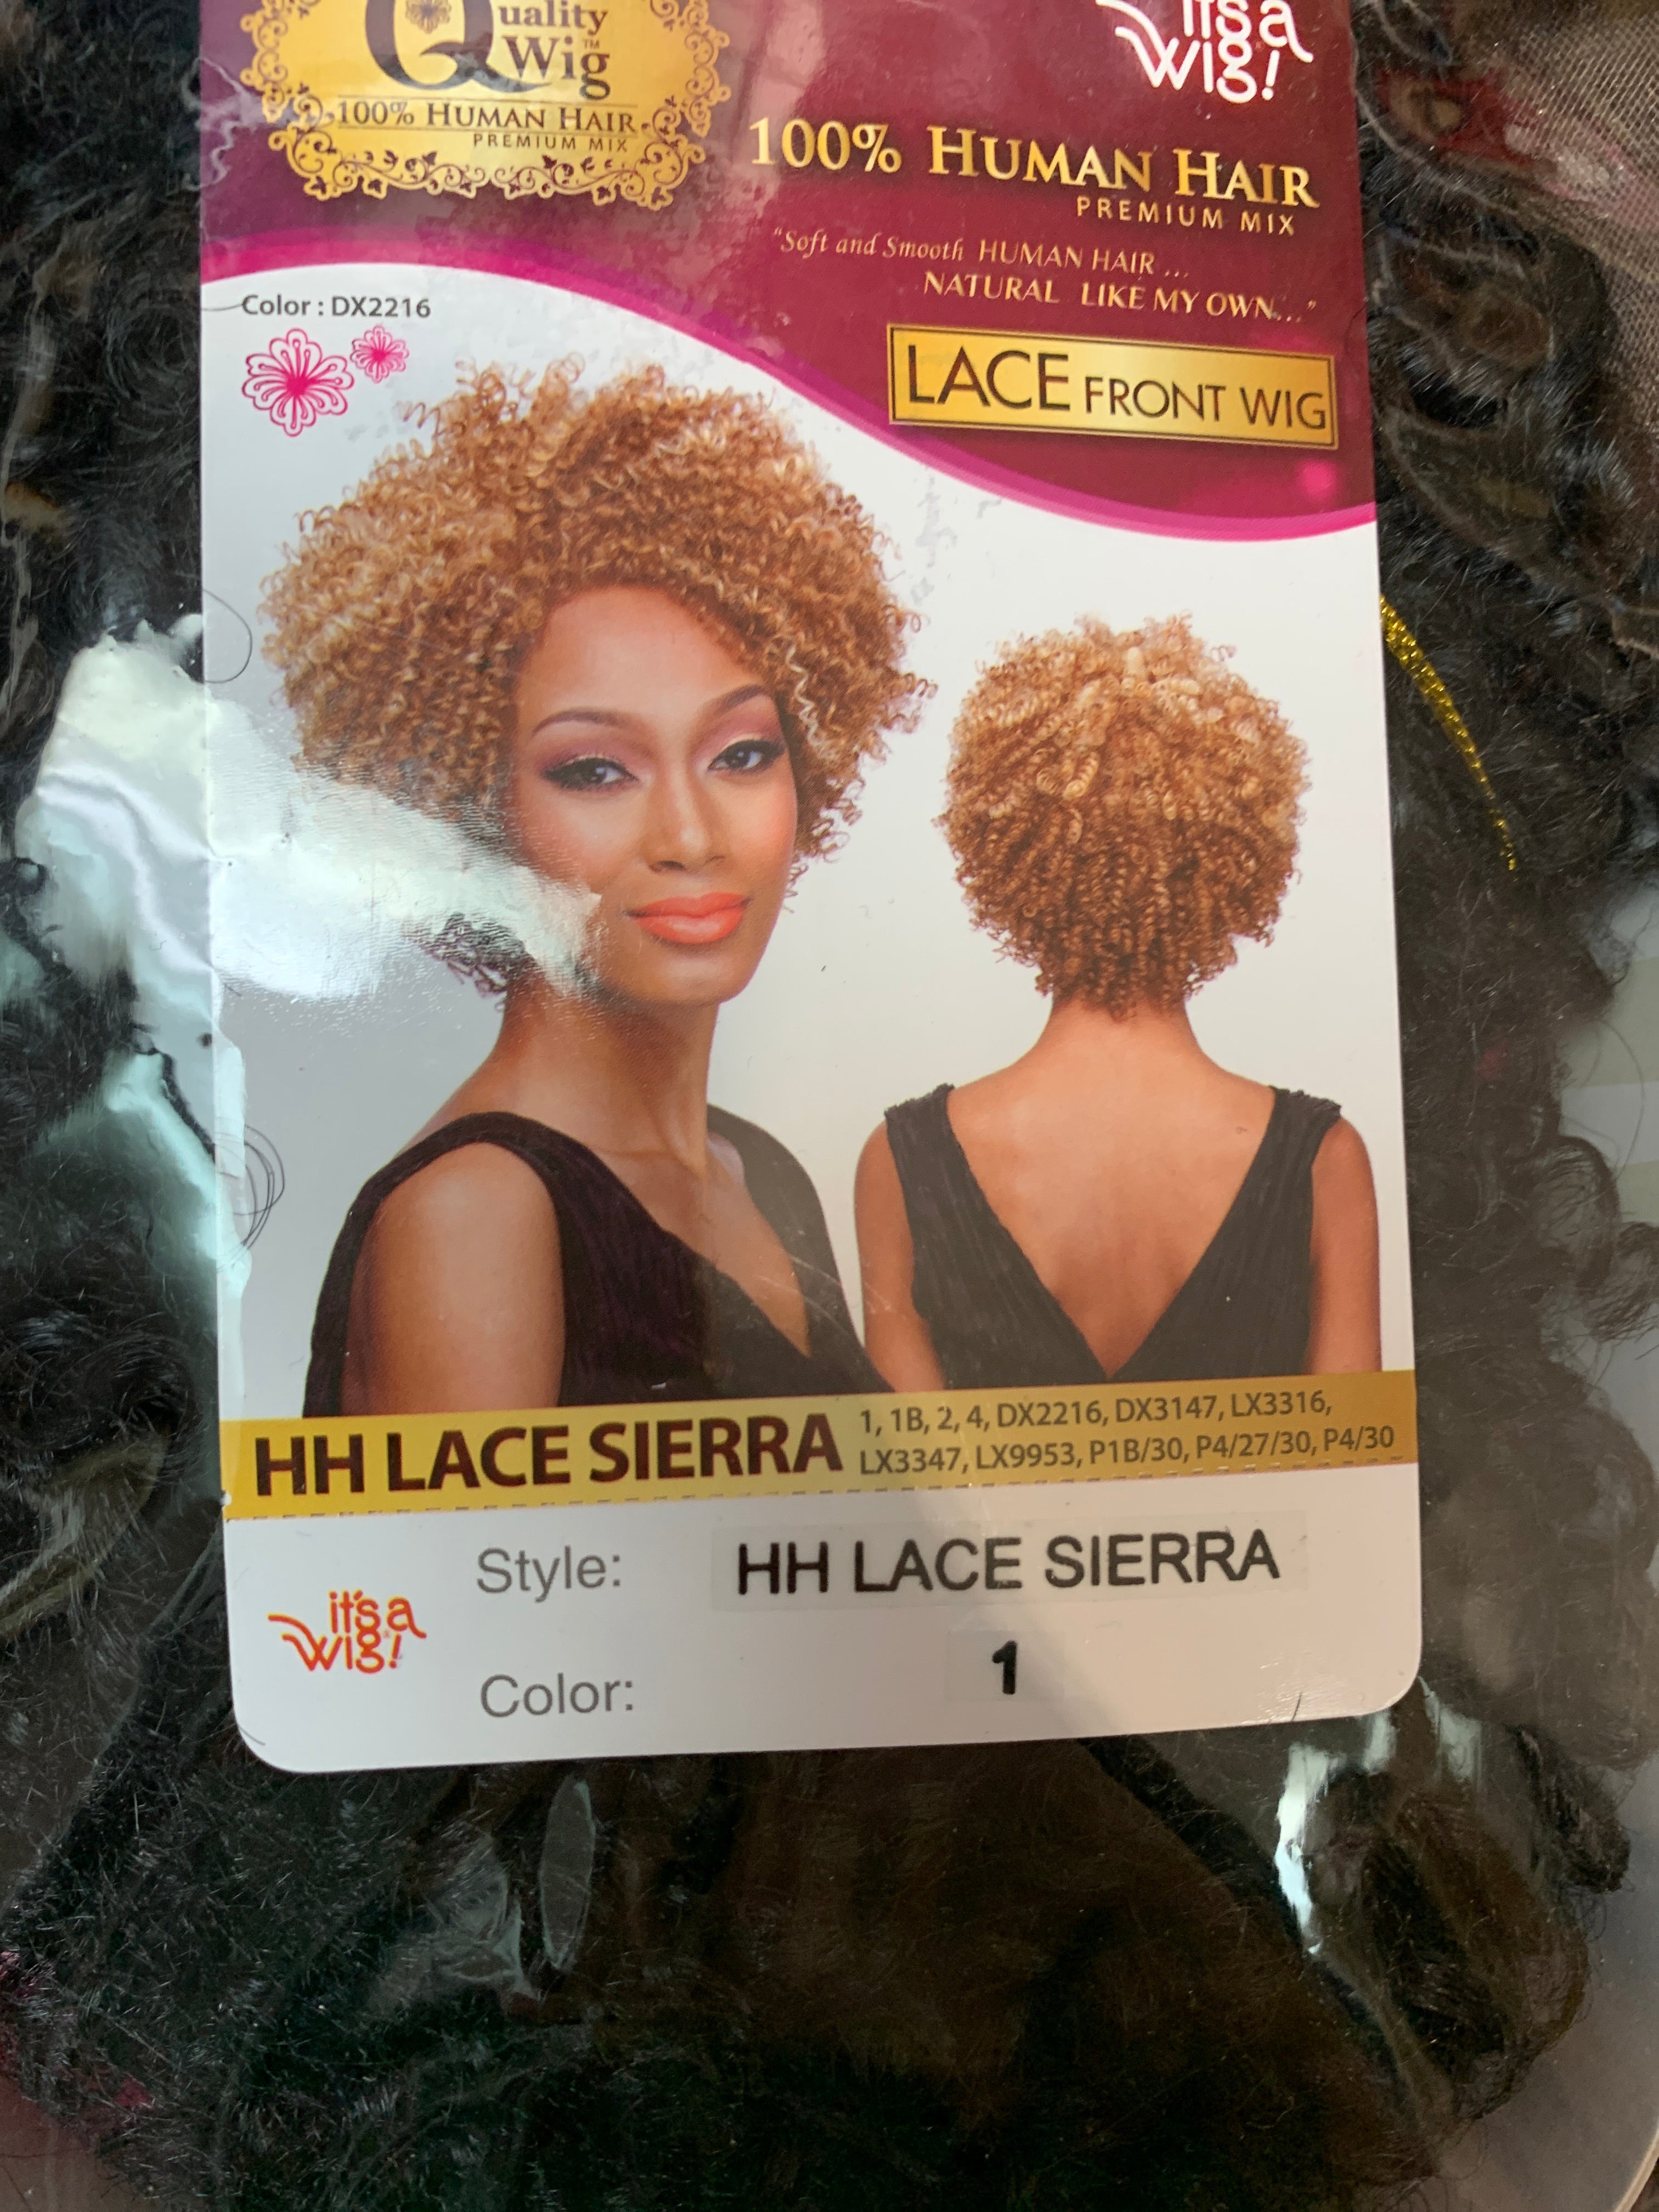 It’s a wig hh lace Sierra